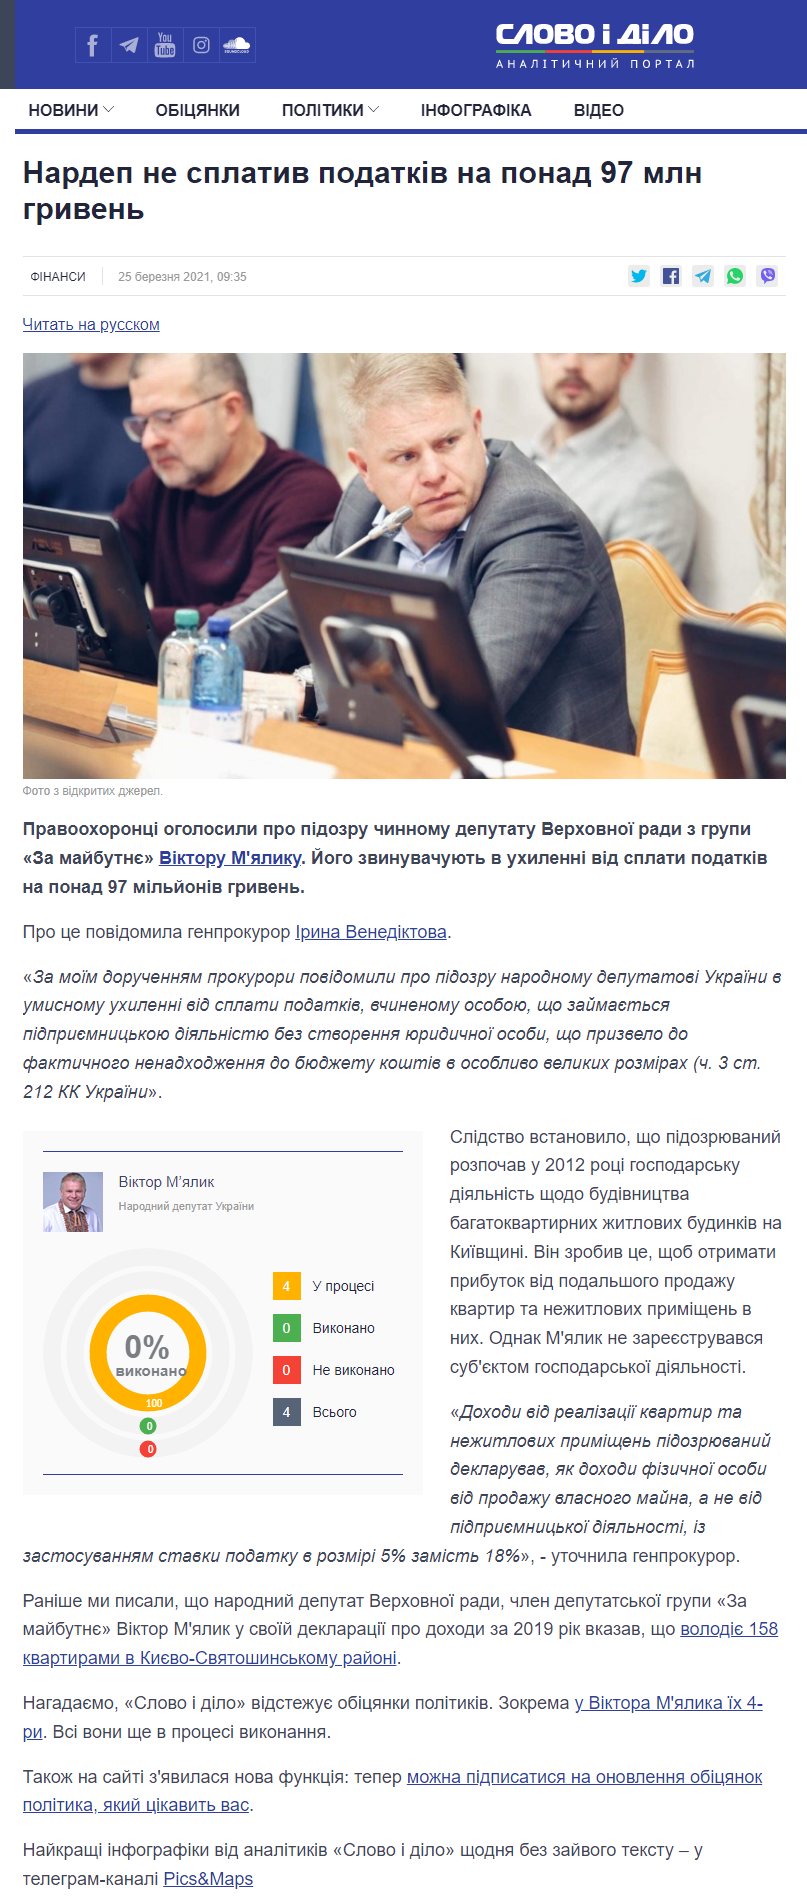 https://www.slovoidilo.ua/2021/03/25/novyna/finansy/nardep-ne-splatyv-podatkiv-97-mln-hryven